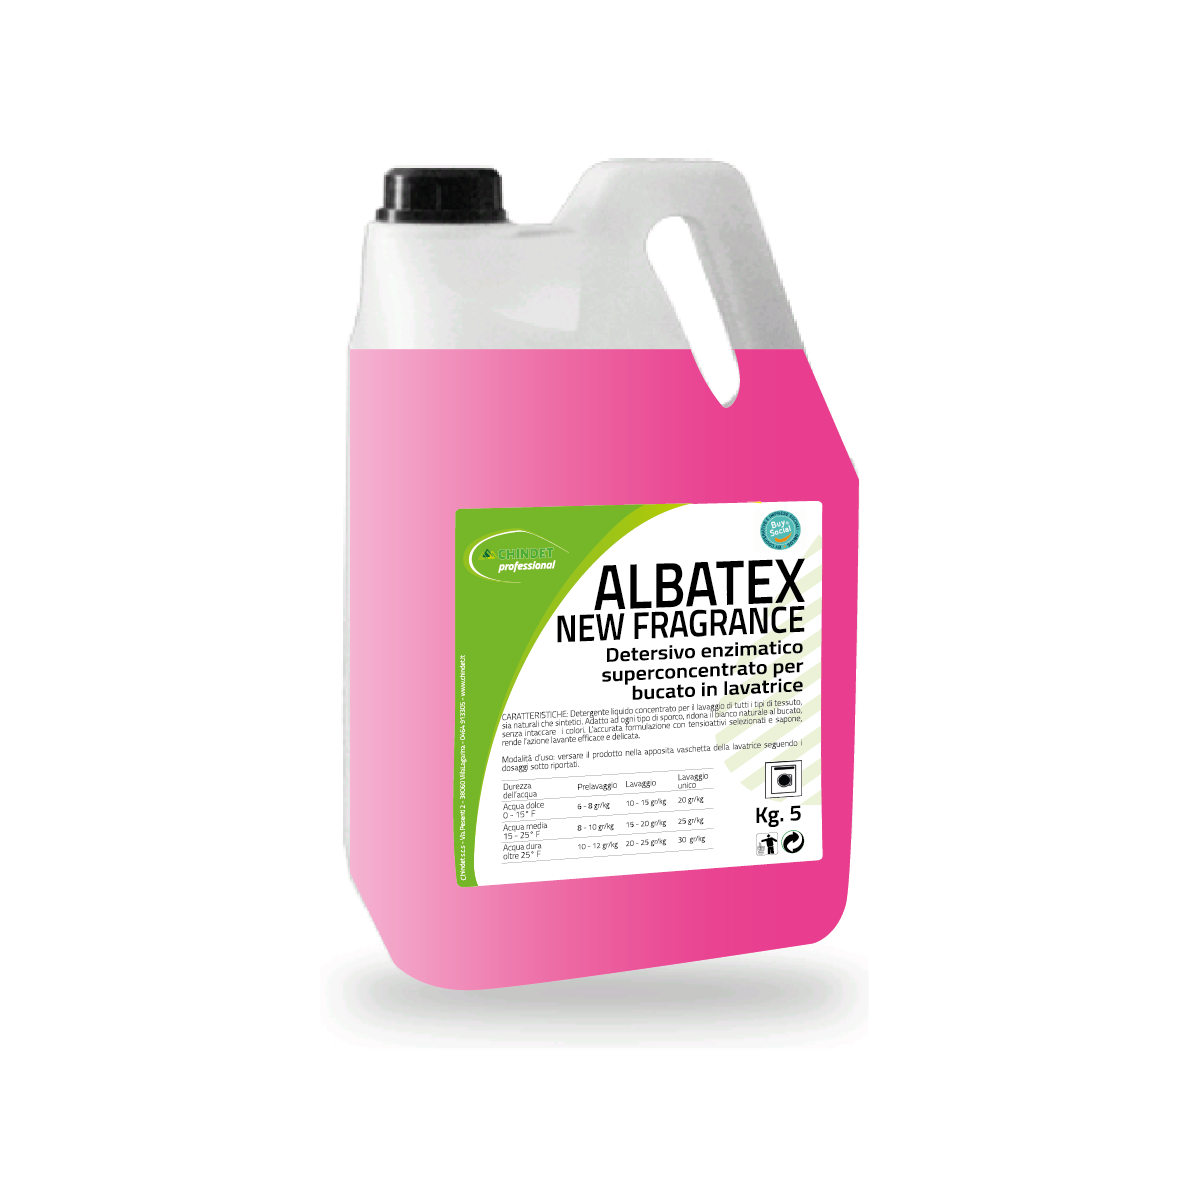 ALbatex new fragrance 5 kg